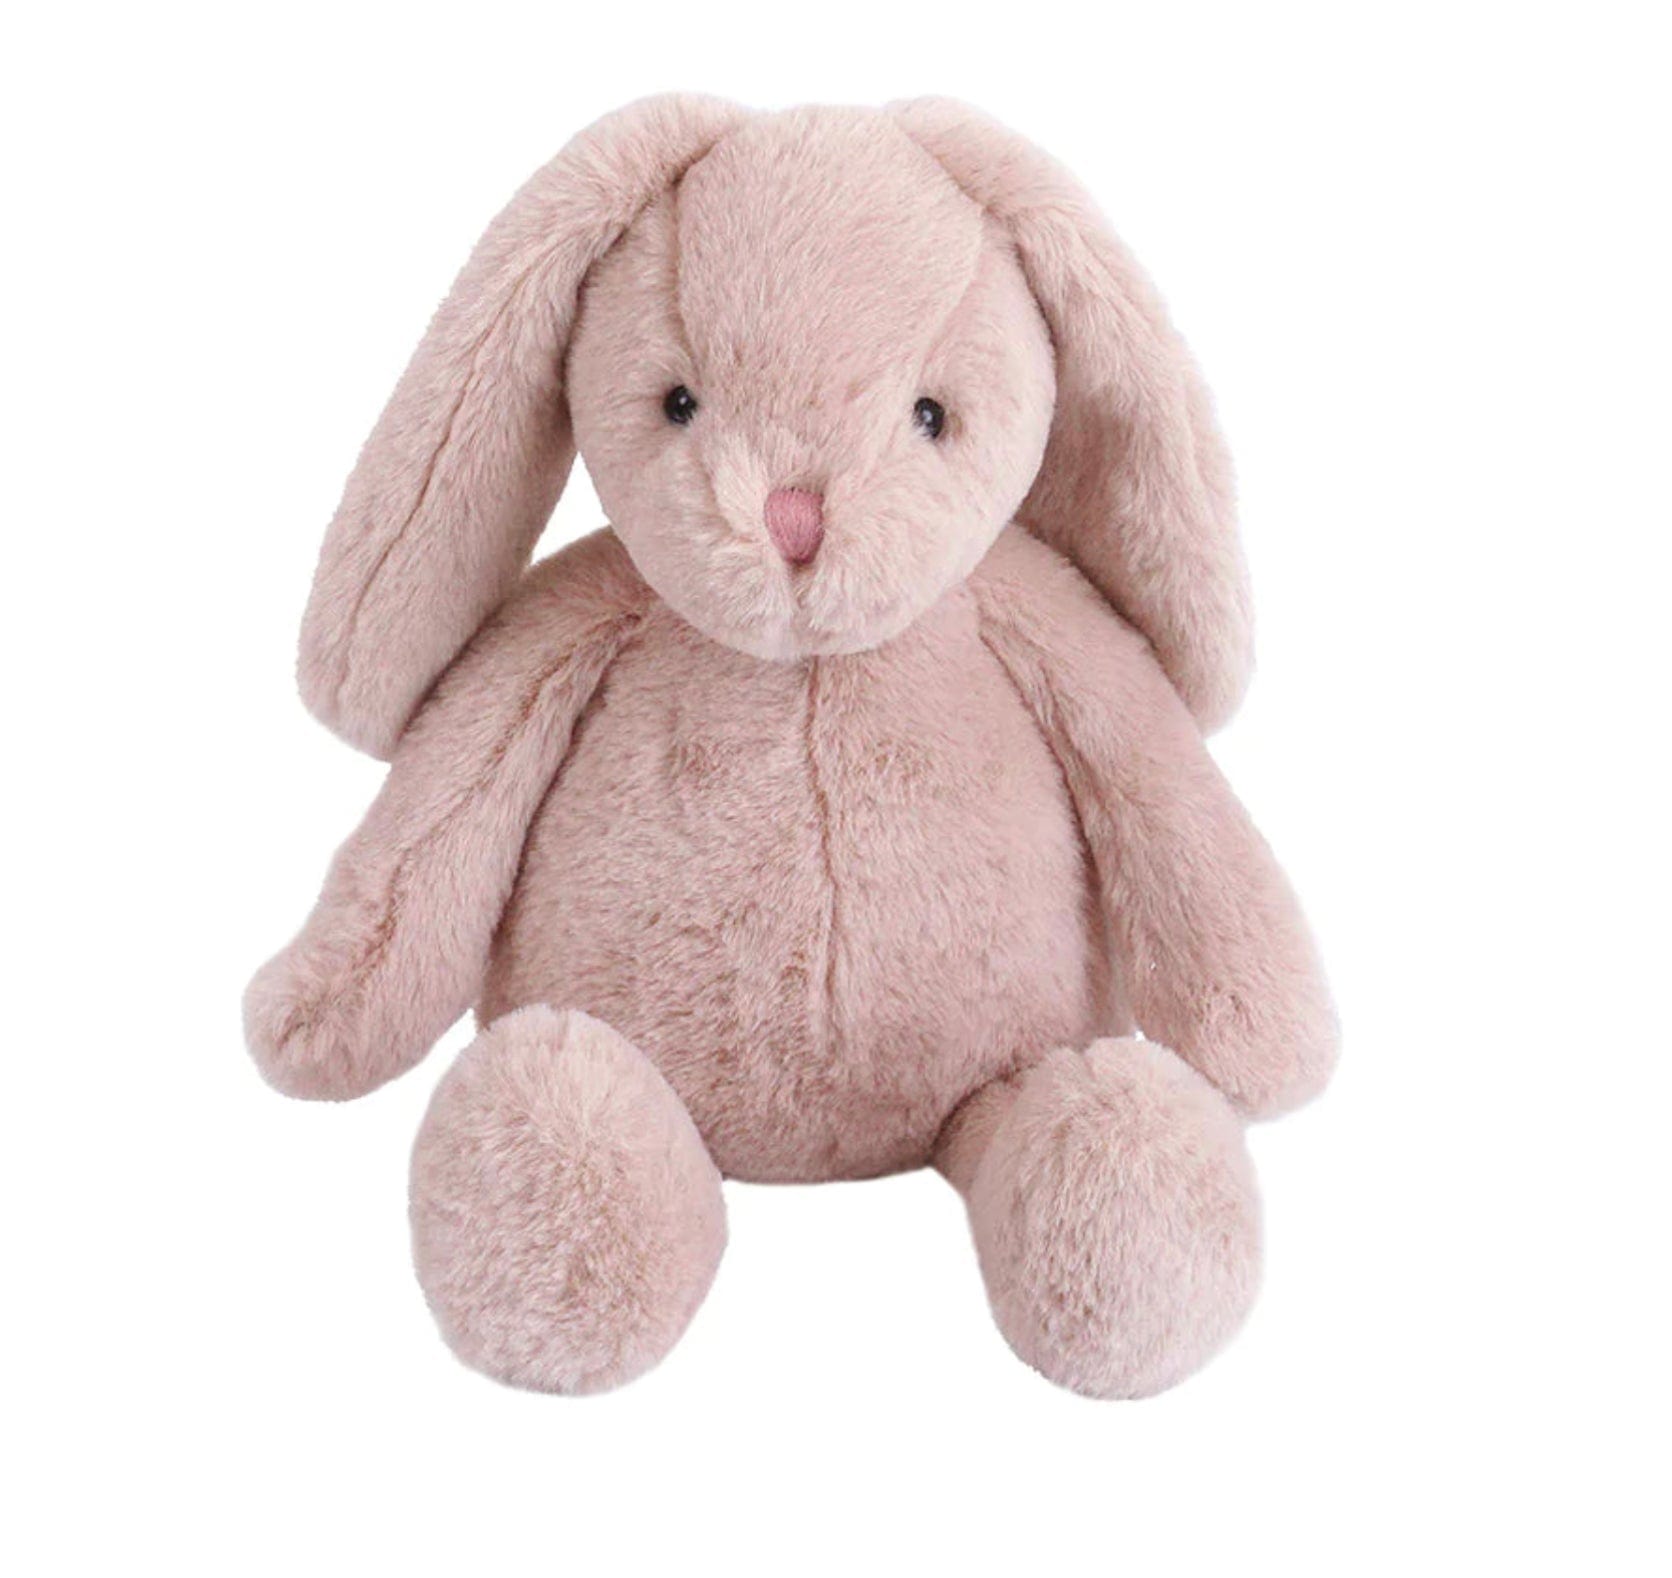 Mon Ami Toys Esther Bunny Mon Ami Plush Toy